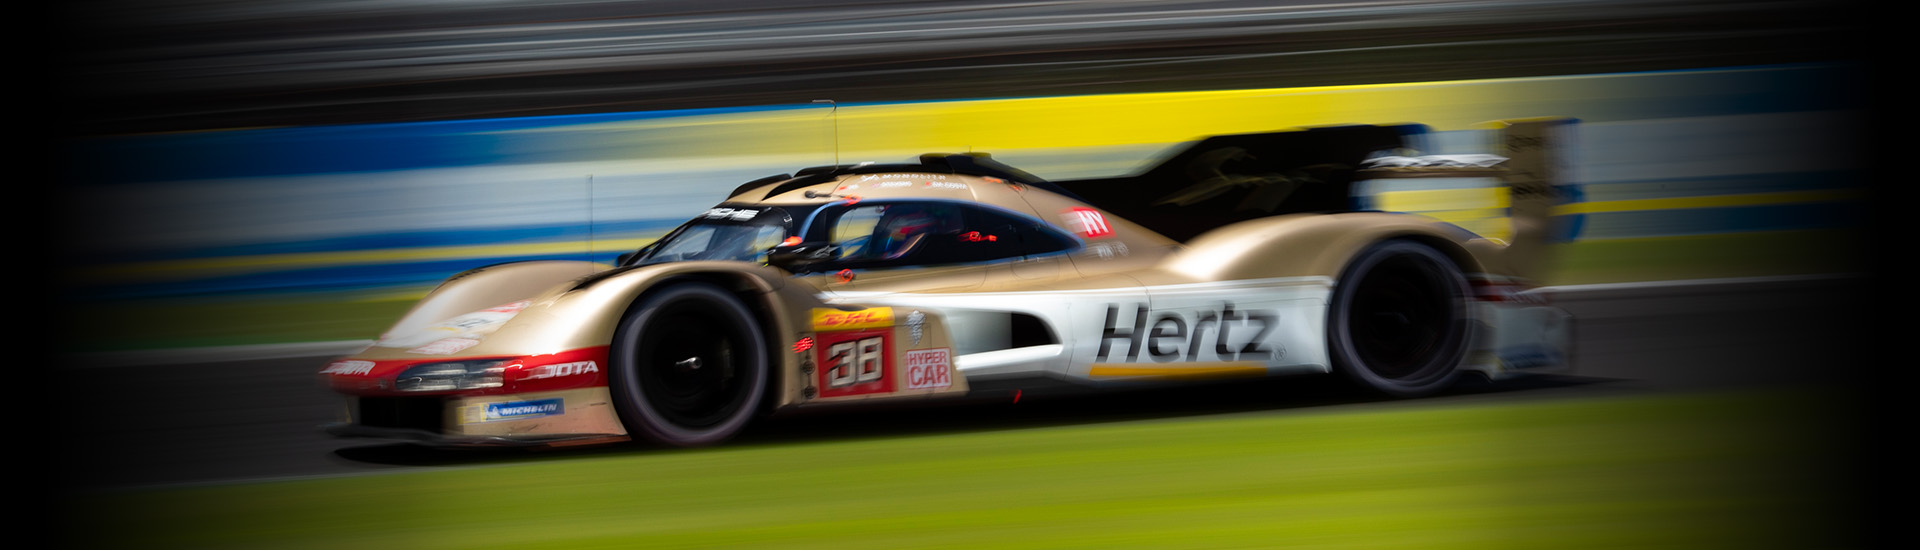 Hertz unveils new Porsche race car, sponsorship at Estero headquarters 